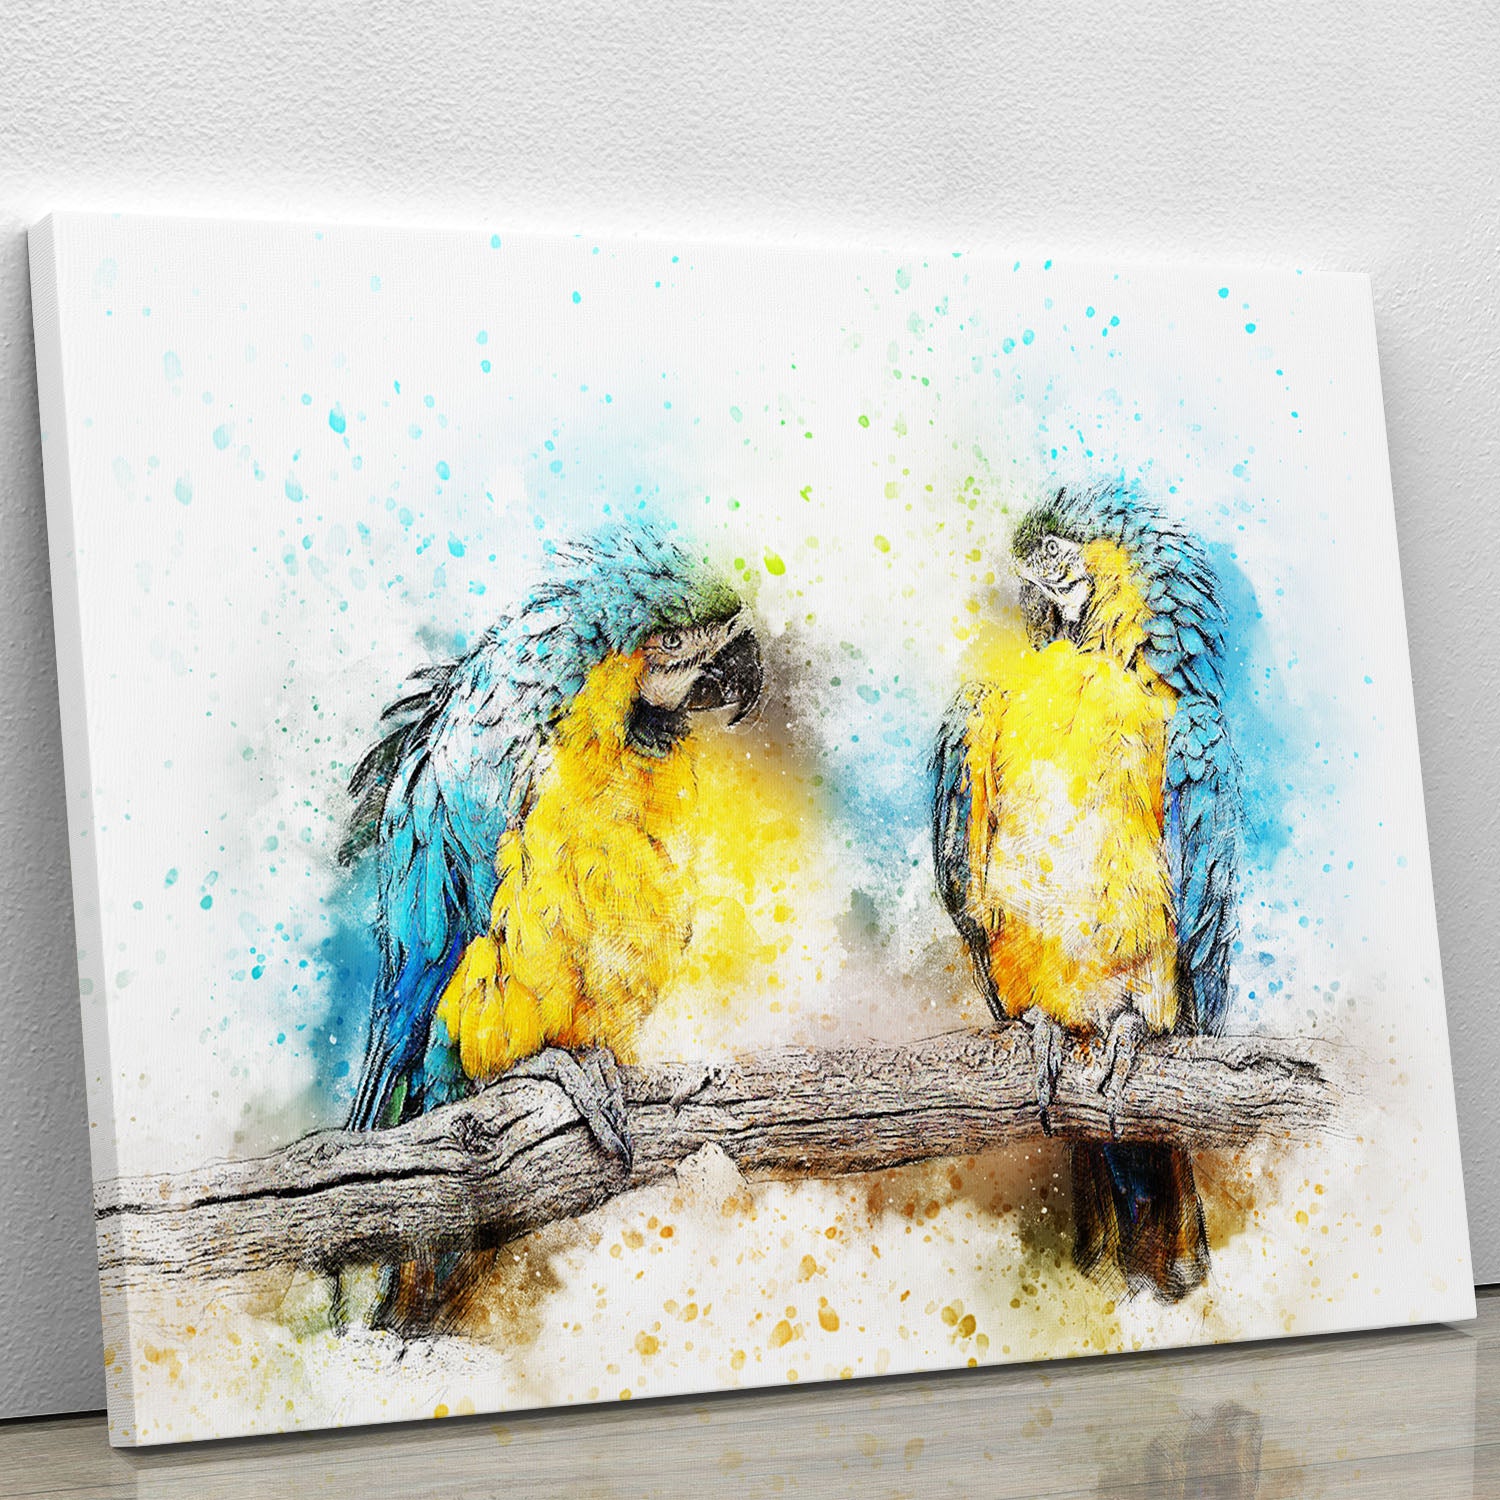 Watercolour Parrots Canvas Print or Poster - Canvas Art Rocks - 1